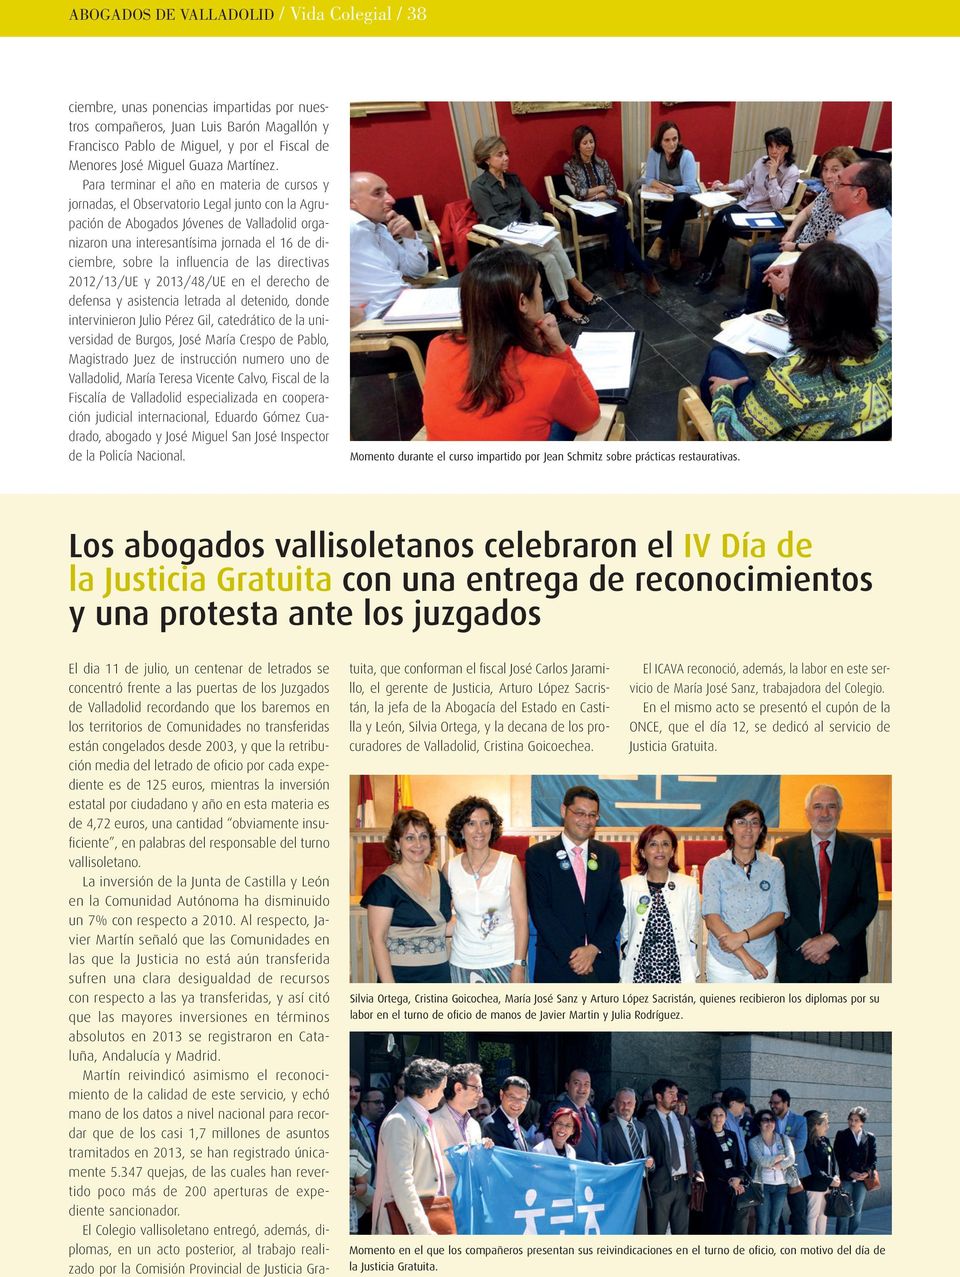 Para terminar el año en materia de cursos y jornadas, el Observatorio Legal junto con la Agrupación de Abogados Jóvenes de Valladolid organizaron una interesantísima jornada el 16 de diciembre, sobre